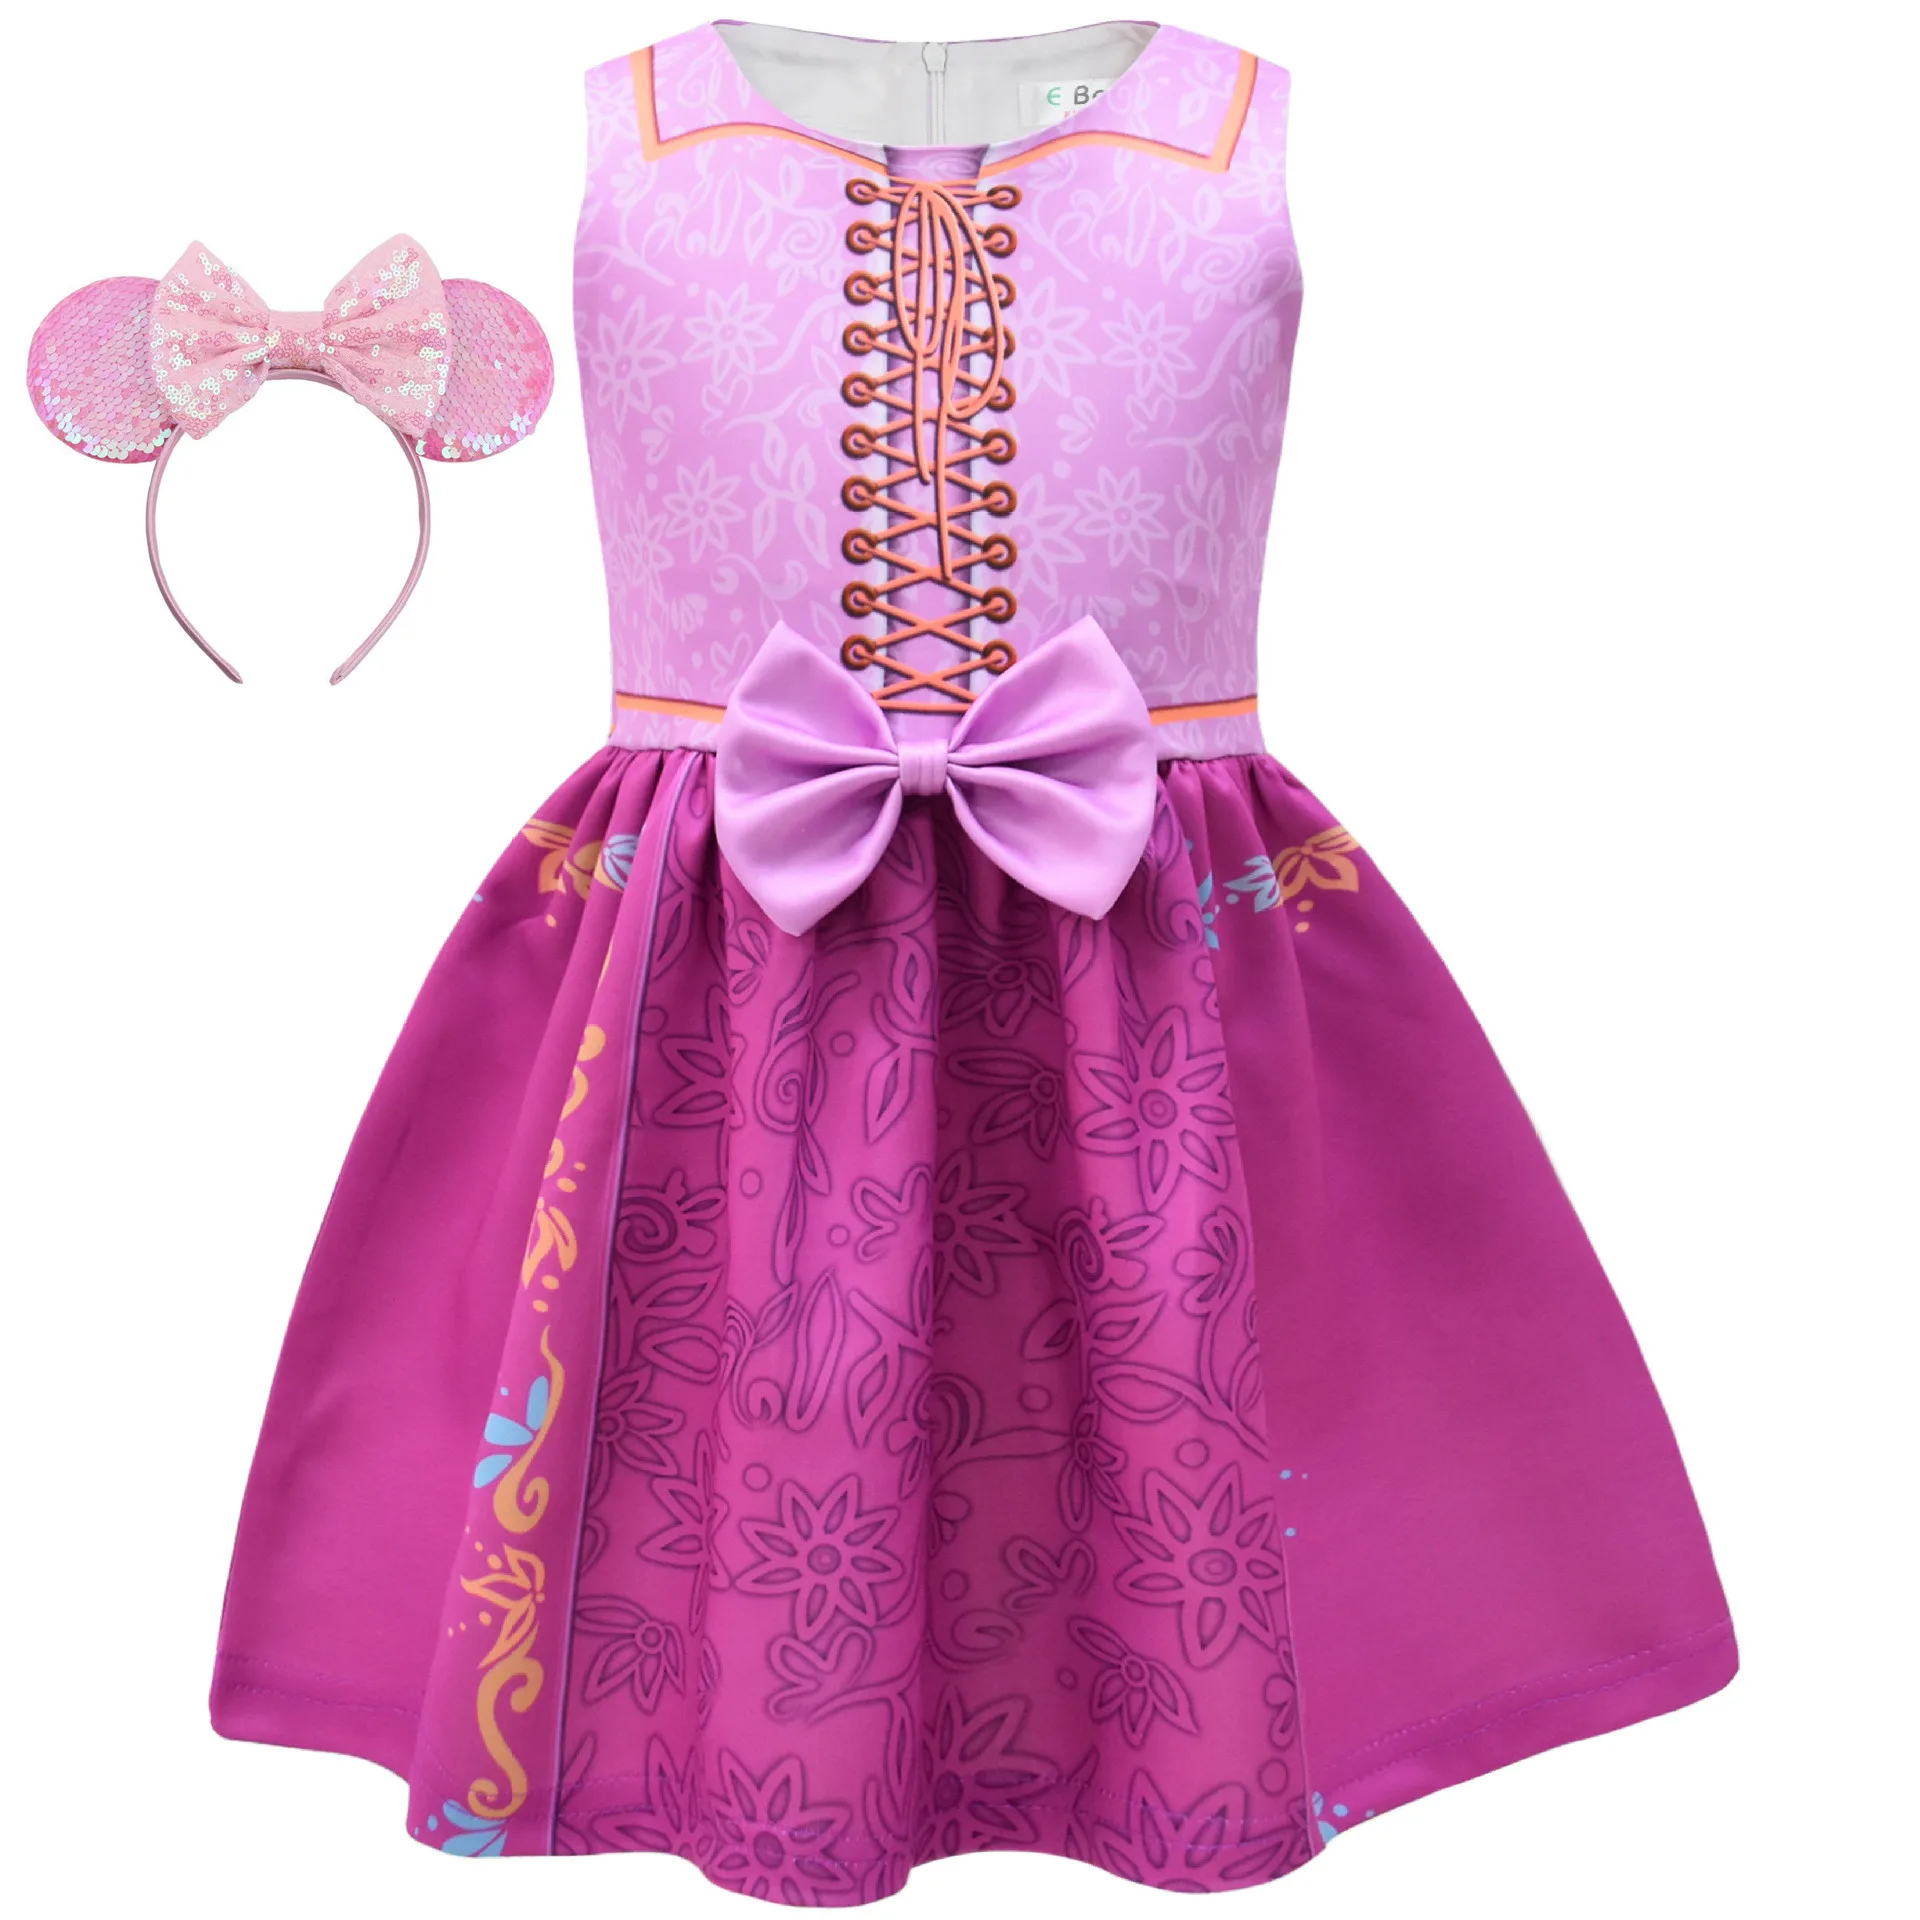 

Детский Костюм Русалки Рапунцель для девочек, мультяшное платье принцессы, одежда для косплея на день рождения, карнавал, Хэллоуин